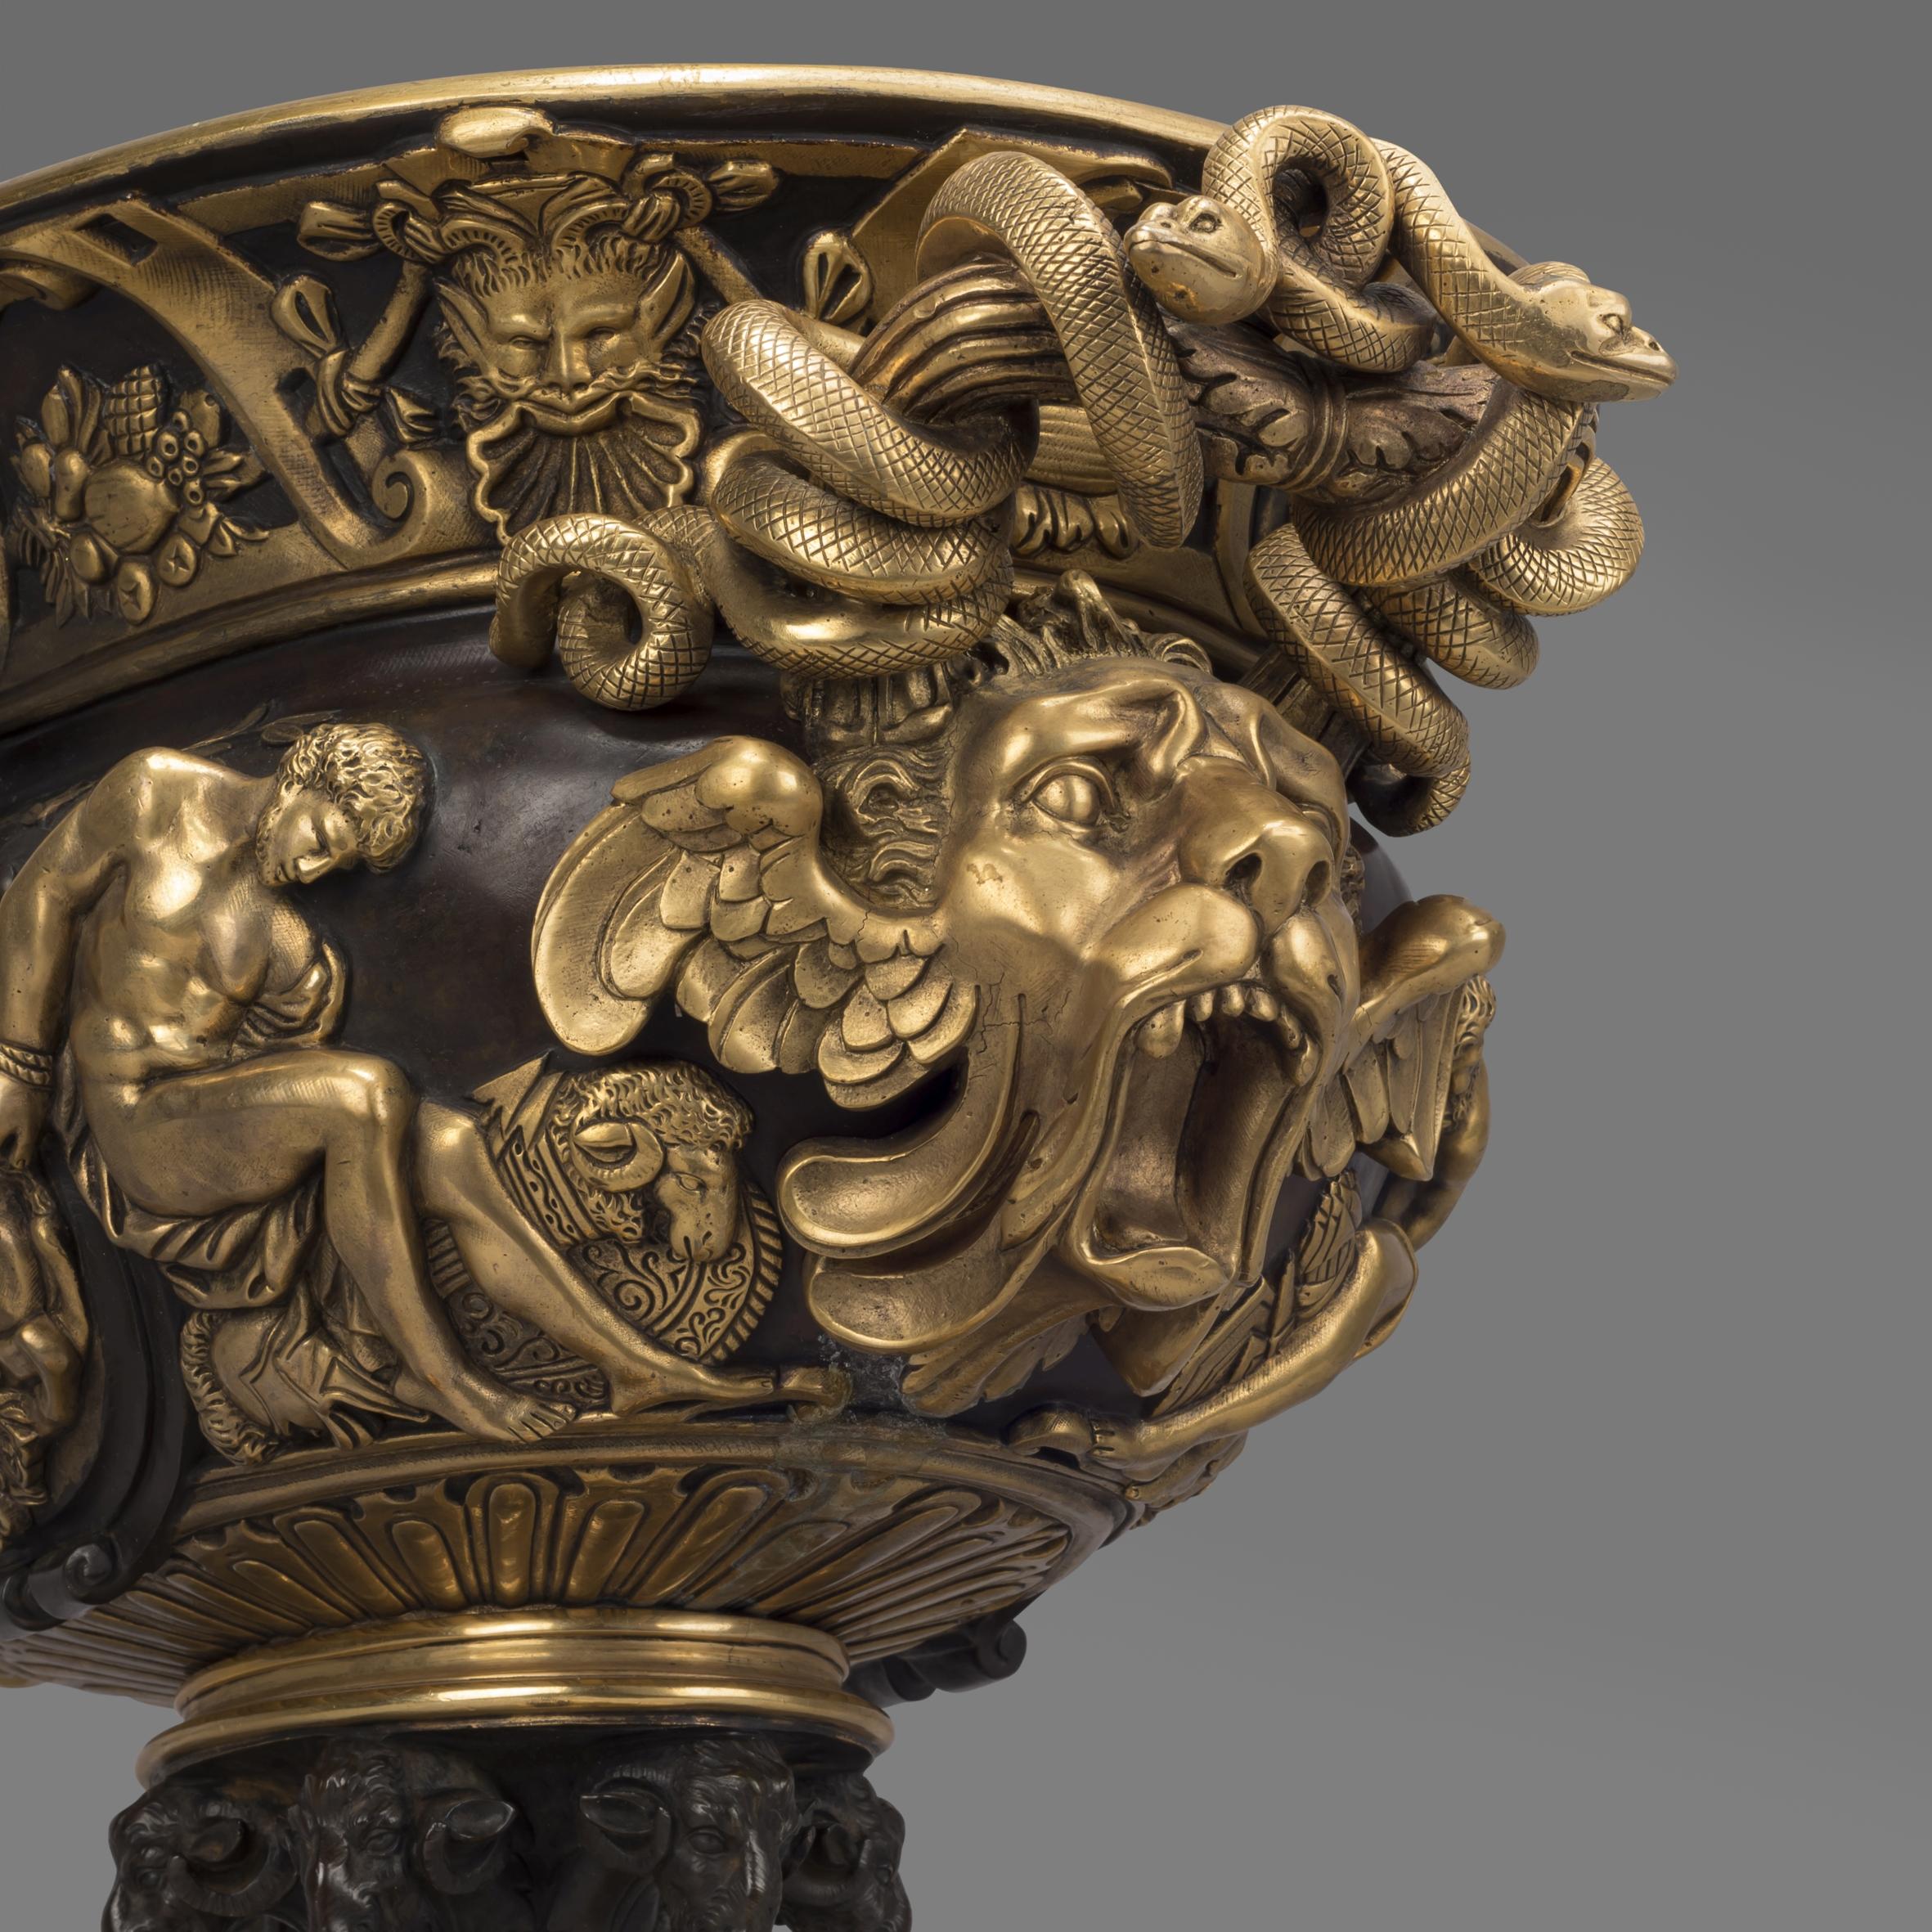 Eine große, fein gegossene, vergoldete und patinierte Bronzevase im neoklassischen Stil.

Diese beeindruckende Vase hat eine ovale Form mit einem vergoldeten und patinierten Bronzedekor mit klassischen Figuren und Motiven. Die Griffe sind als